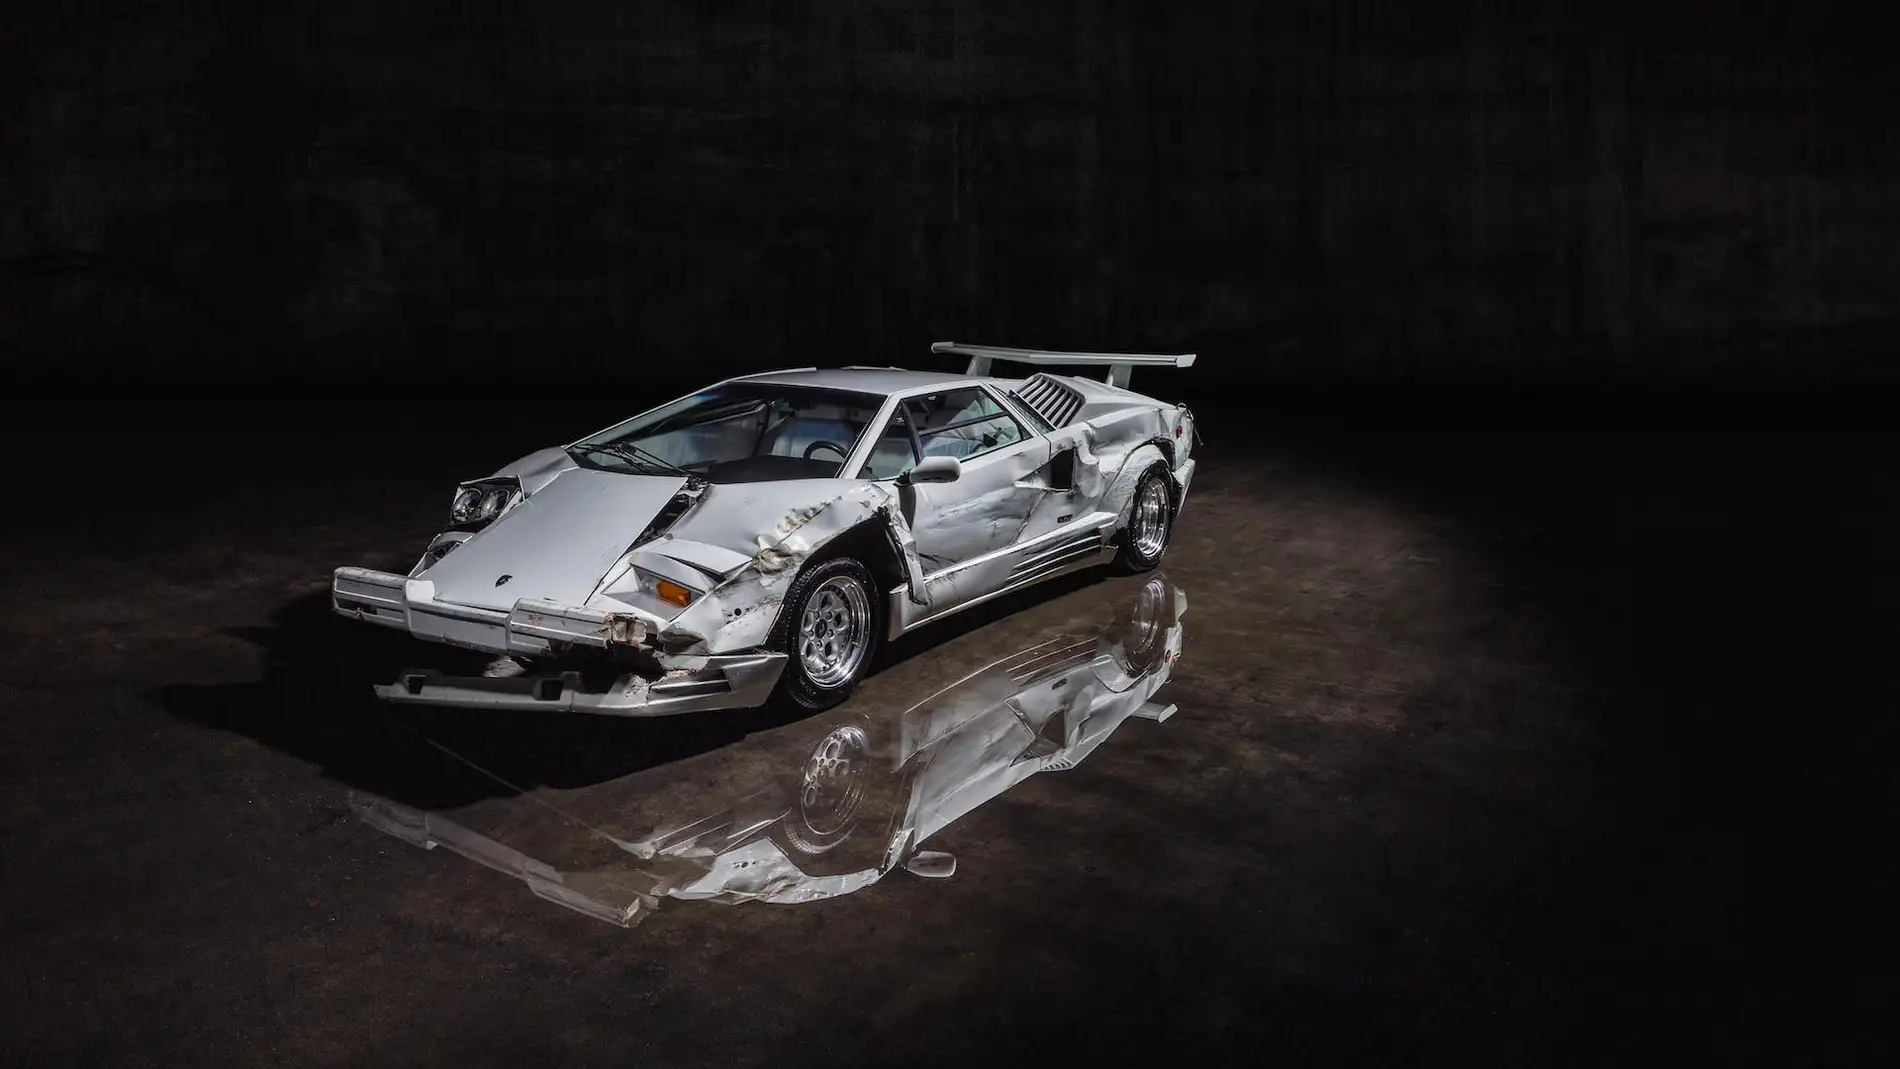 Sale a subasta un Lamborghini Countach de desguace, pero podrían llegar a pagar 2 millones de dólares por él